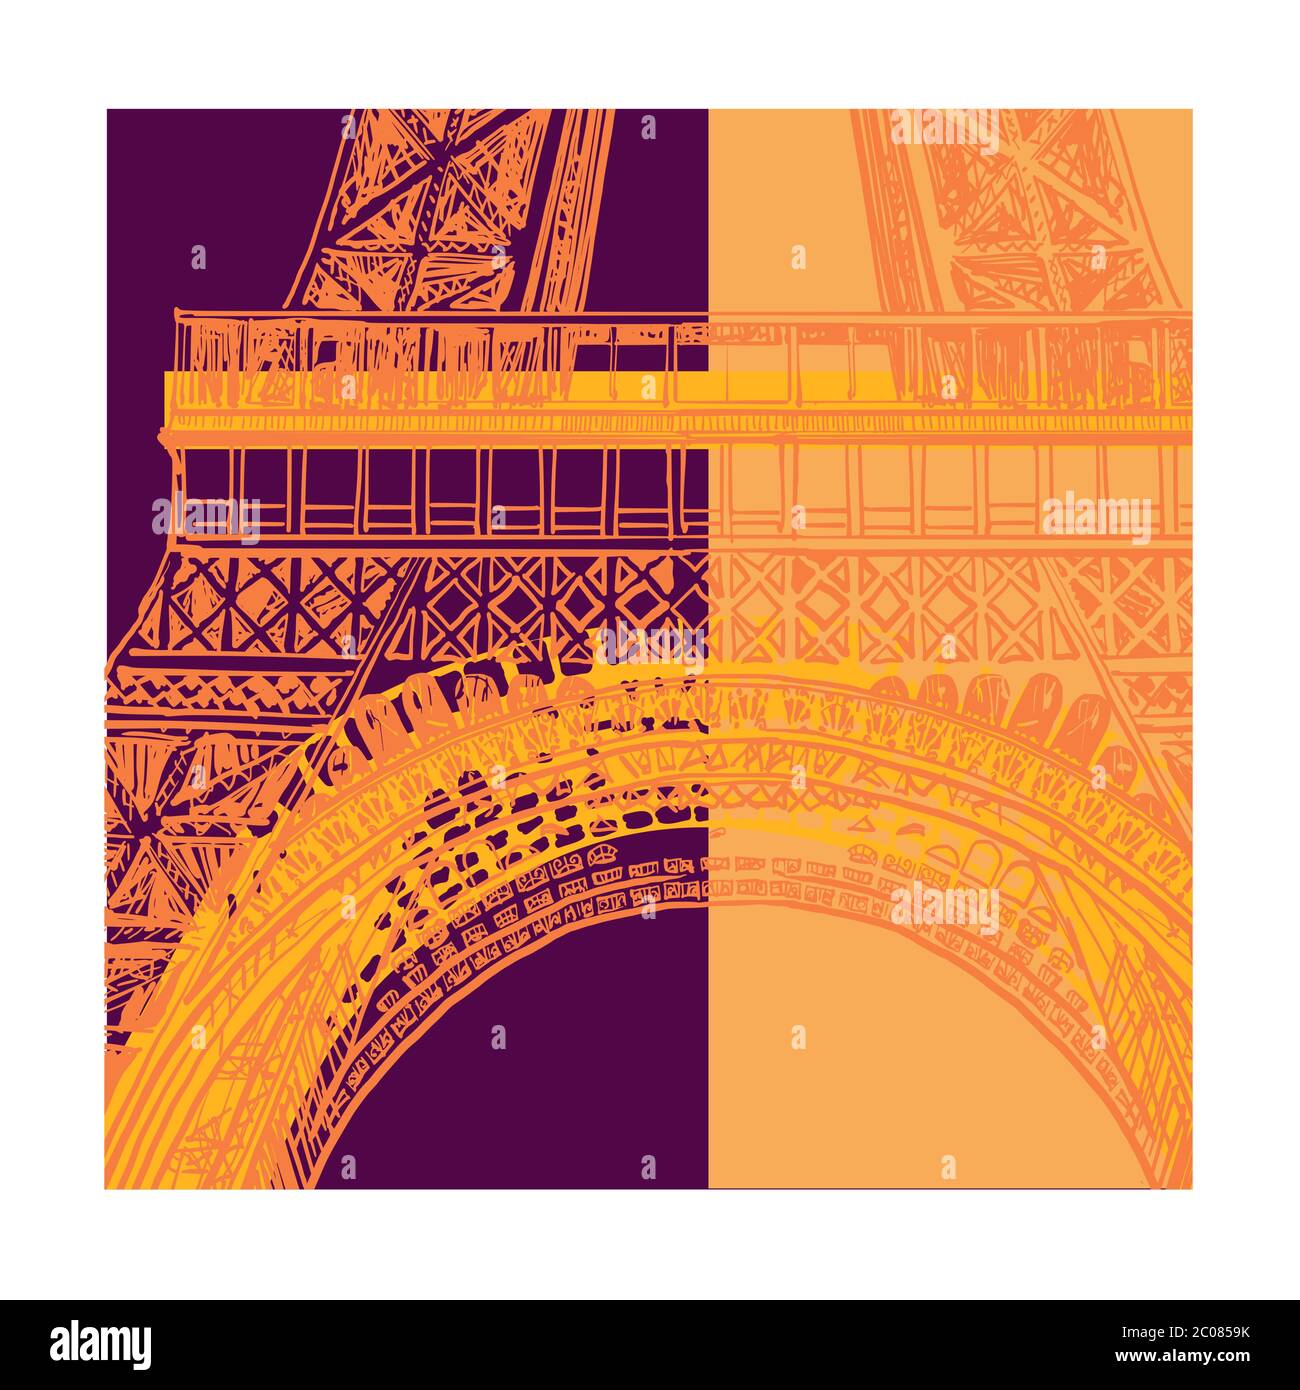 Farbenfrohe Darstellung des eiffelturms in Paris - Vektorgrafiken (ideal für den Druck auf Stoff oder Papier, Plakat oder Tapete, Hausdekoration) Stock Vektor